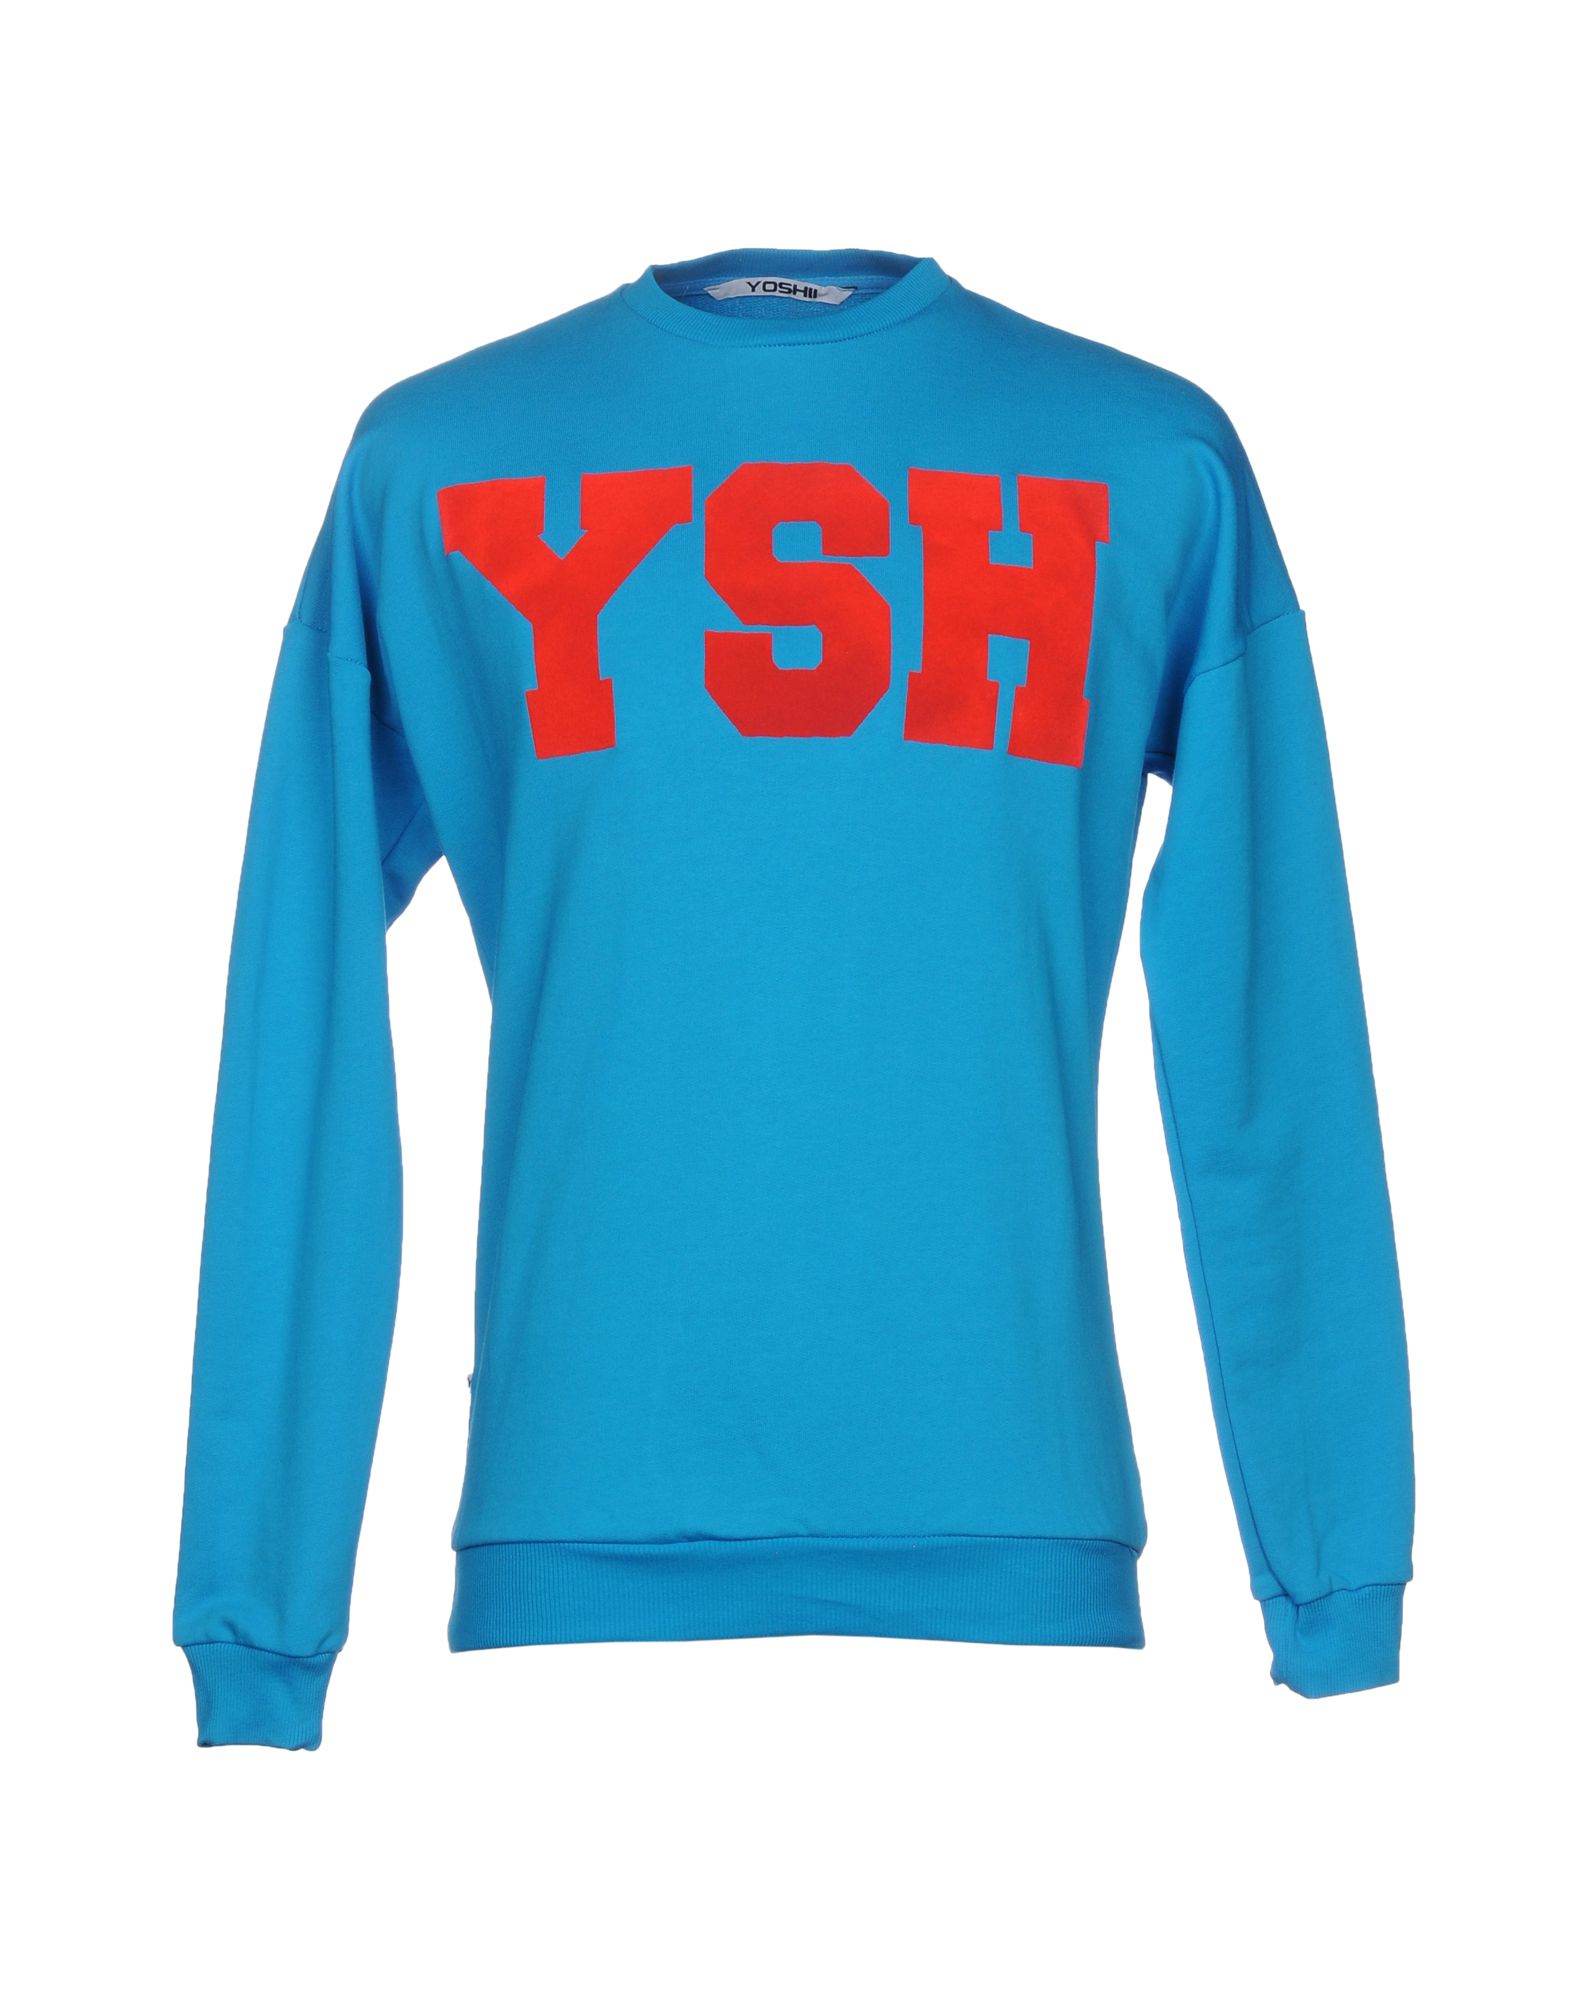 《送料無料》YOSHII メンズ スウェットシャツ ターコイズブルー S コットン 100%